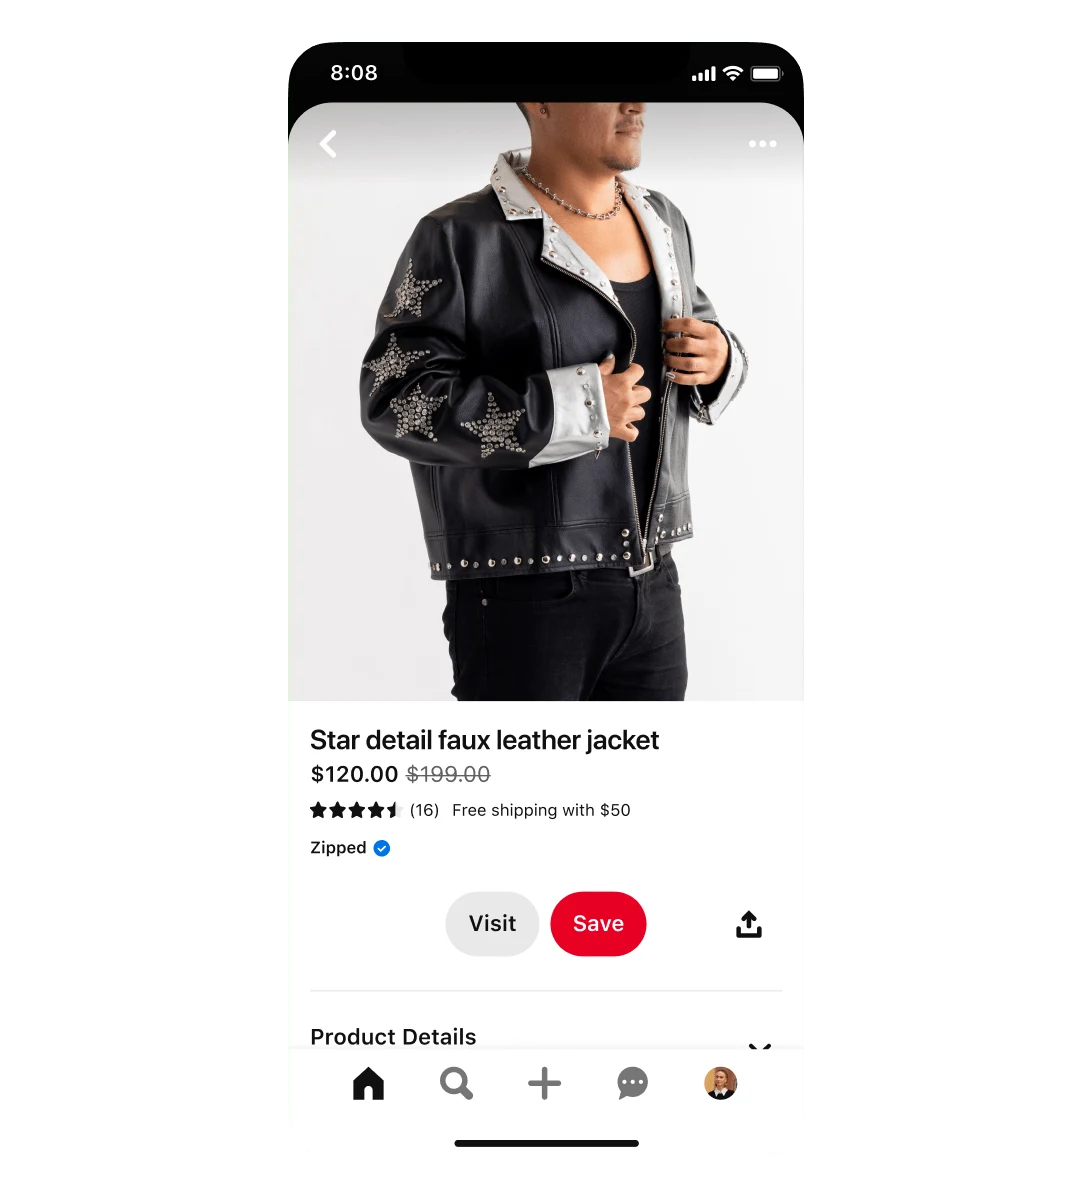 Mobiele weergave van een winkeladvertentie voor een jack van imitatieleer met sterren. Het jack wordt verkocht voor $ 120 en is afgeprijsd van $ 199. In de advertentie draagt een man het jack.